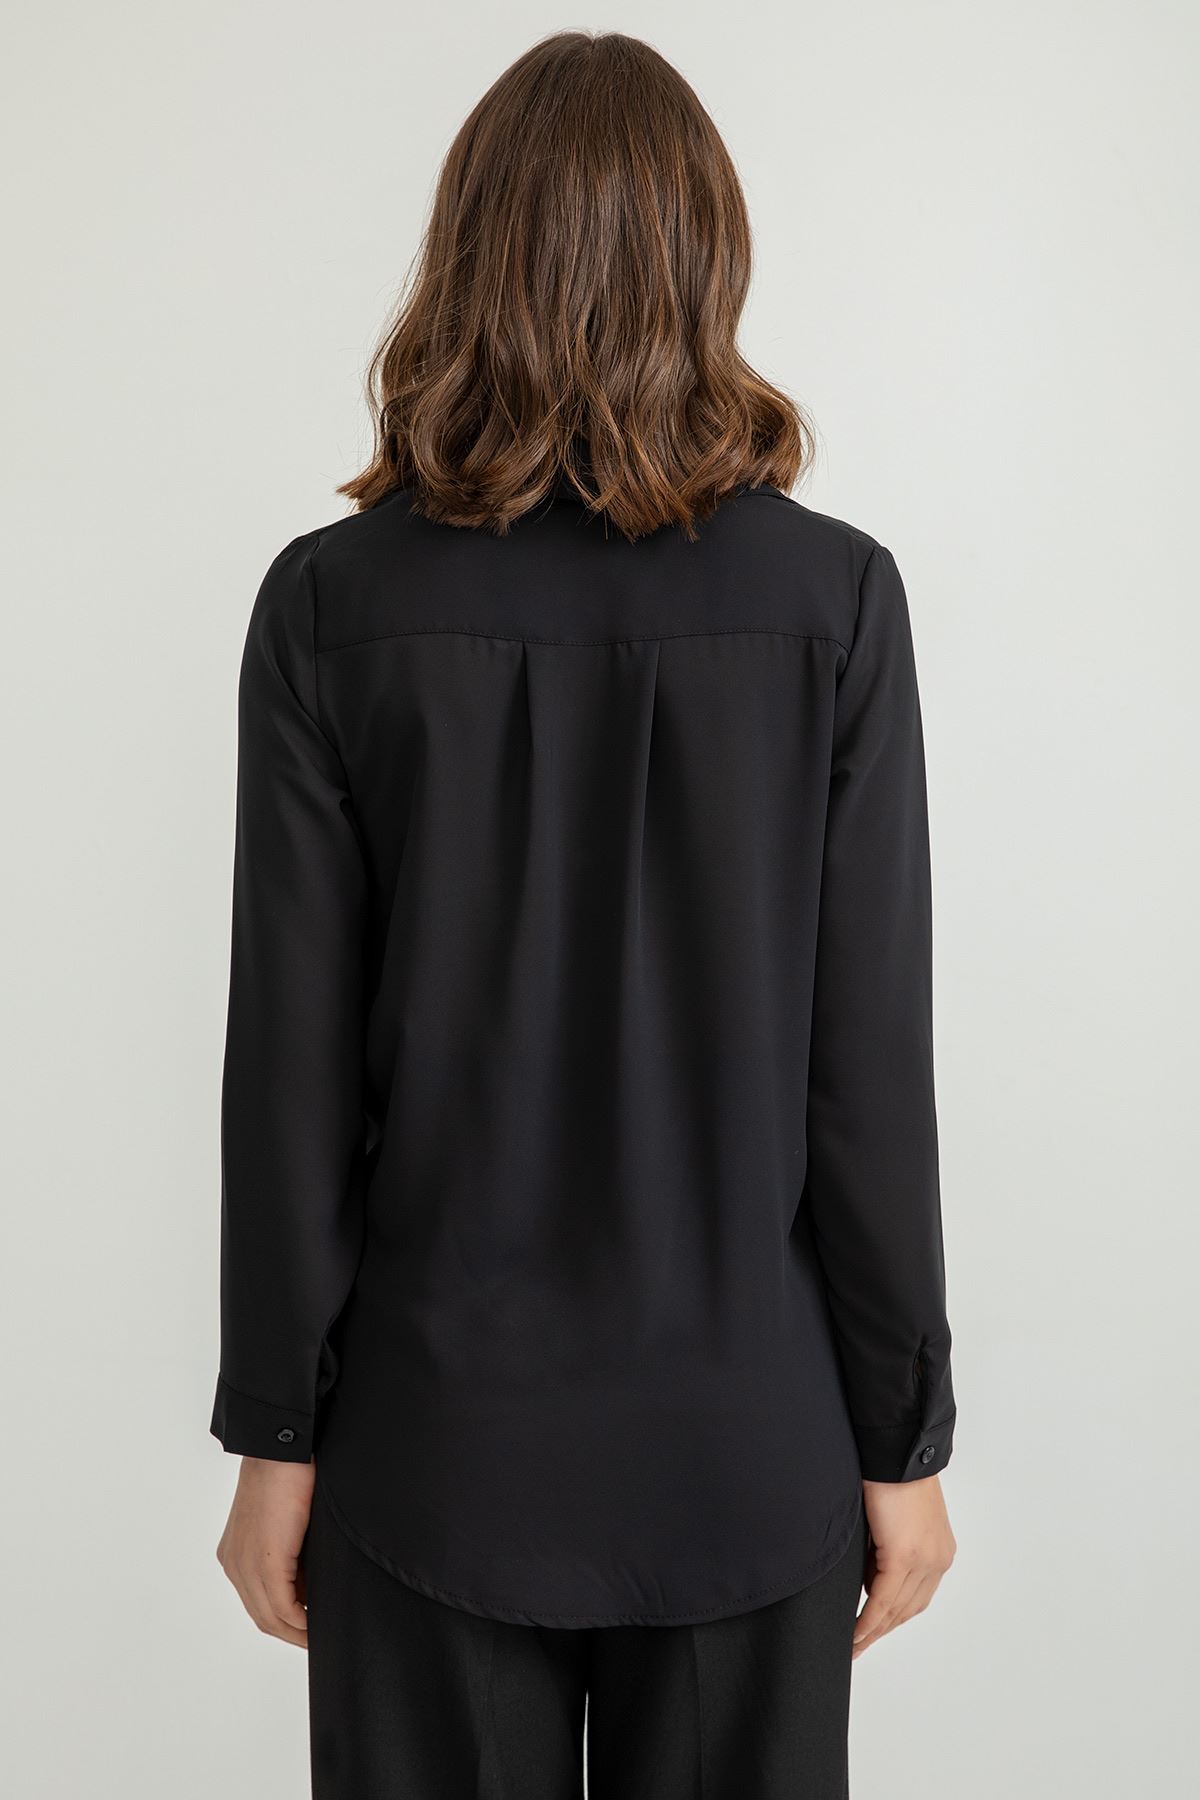 джессика ткань Женская рубашка на пуговицах спереди - Чёрный